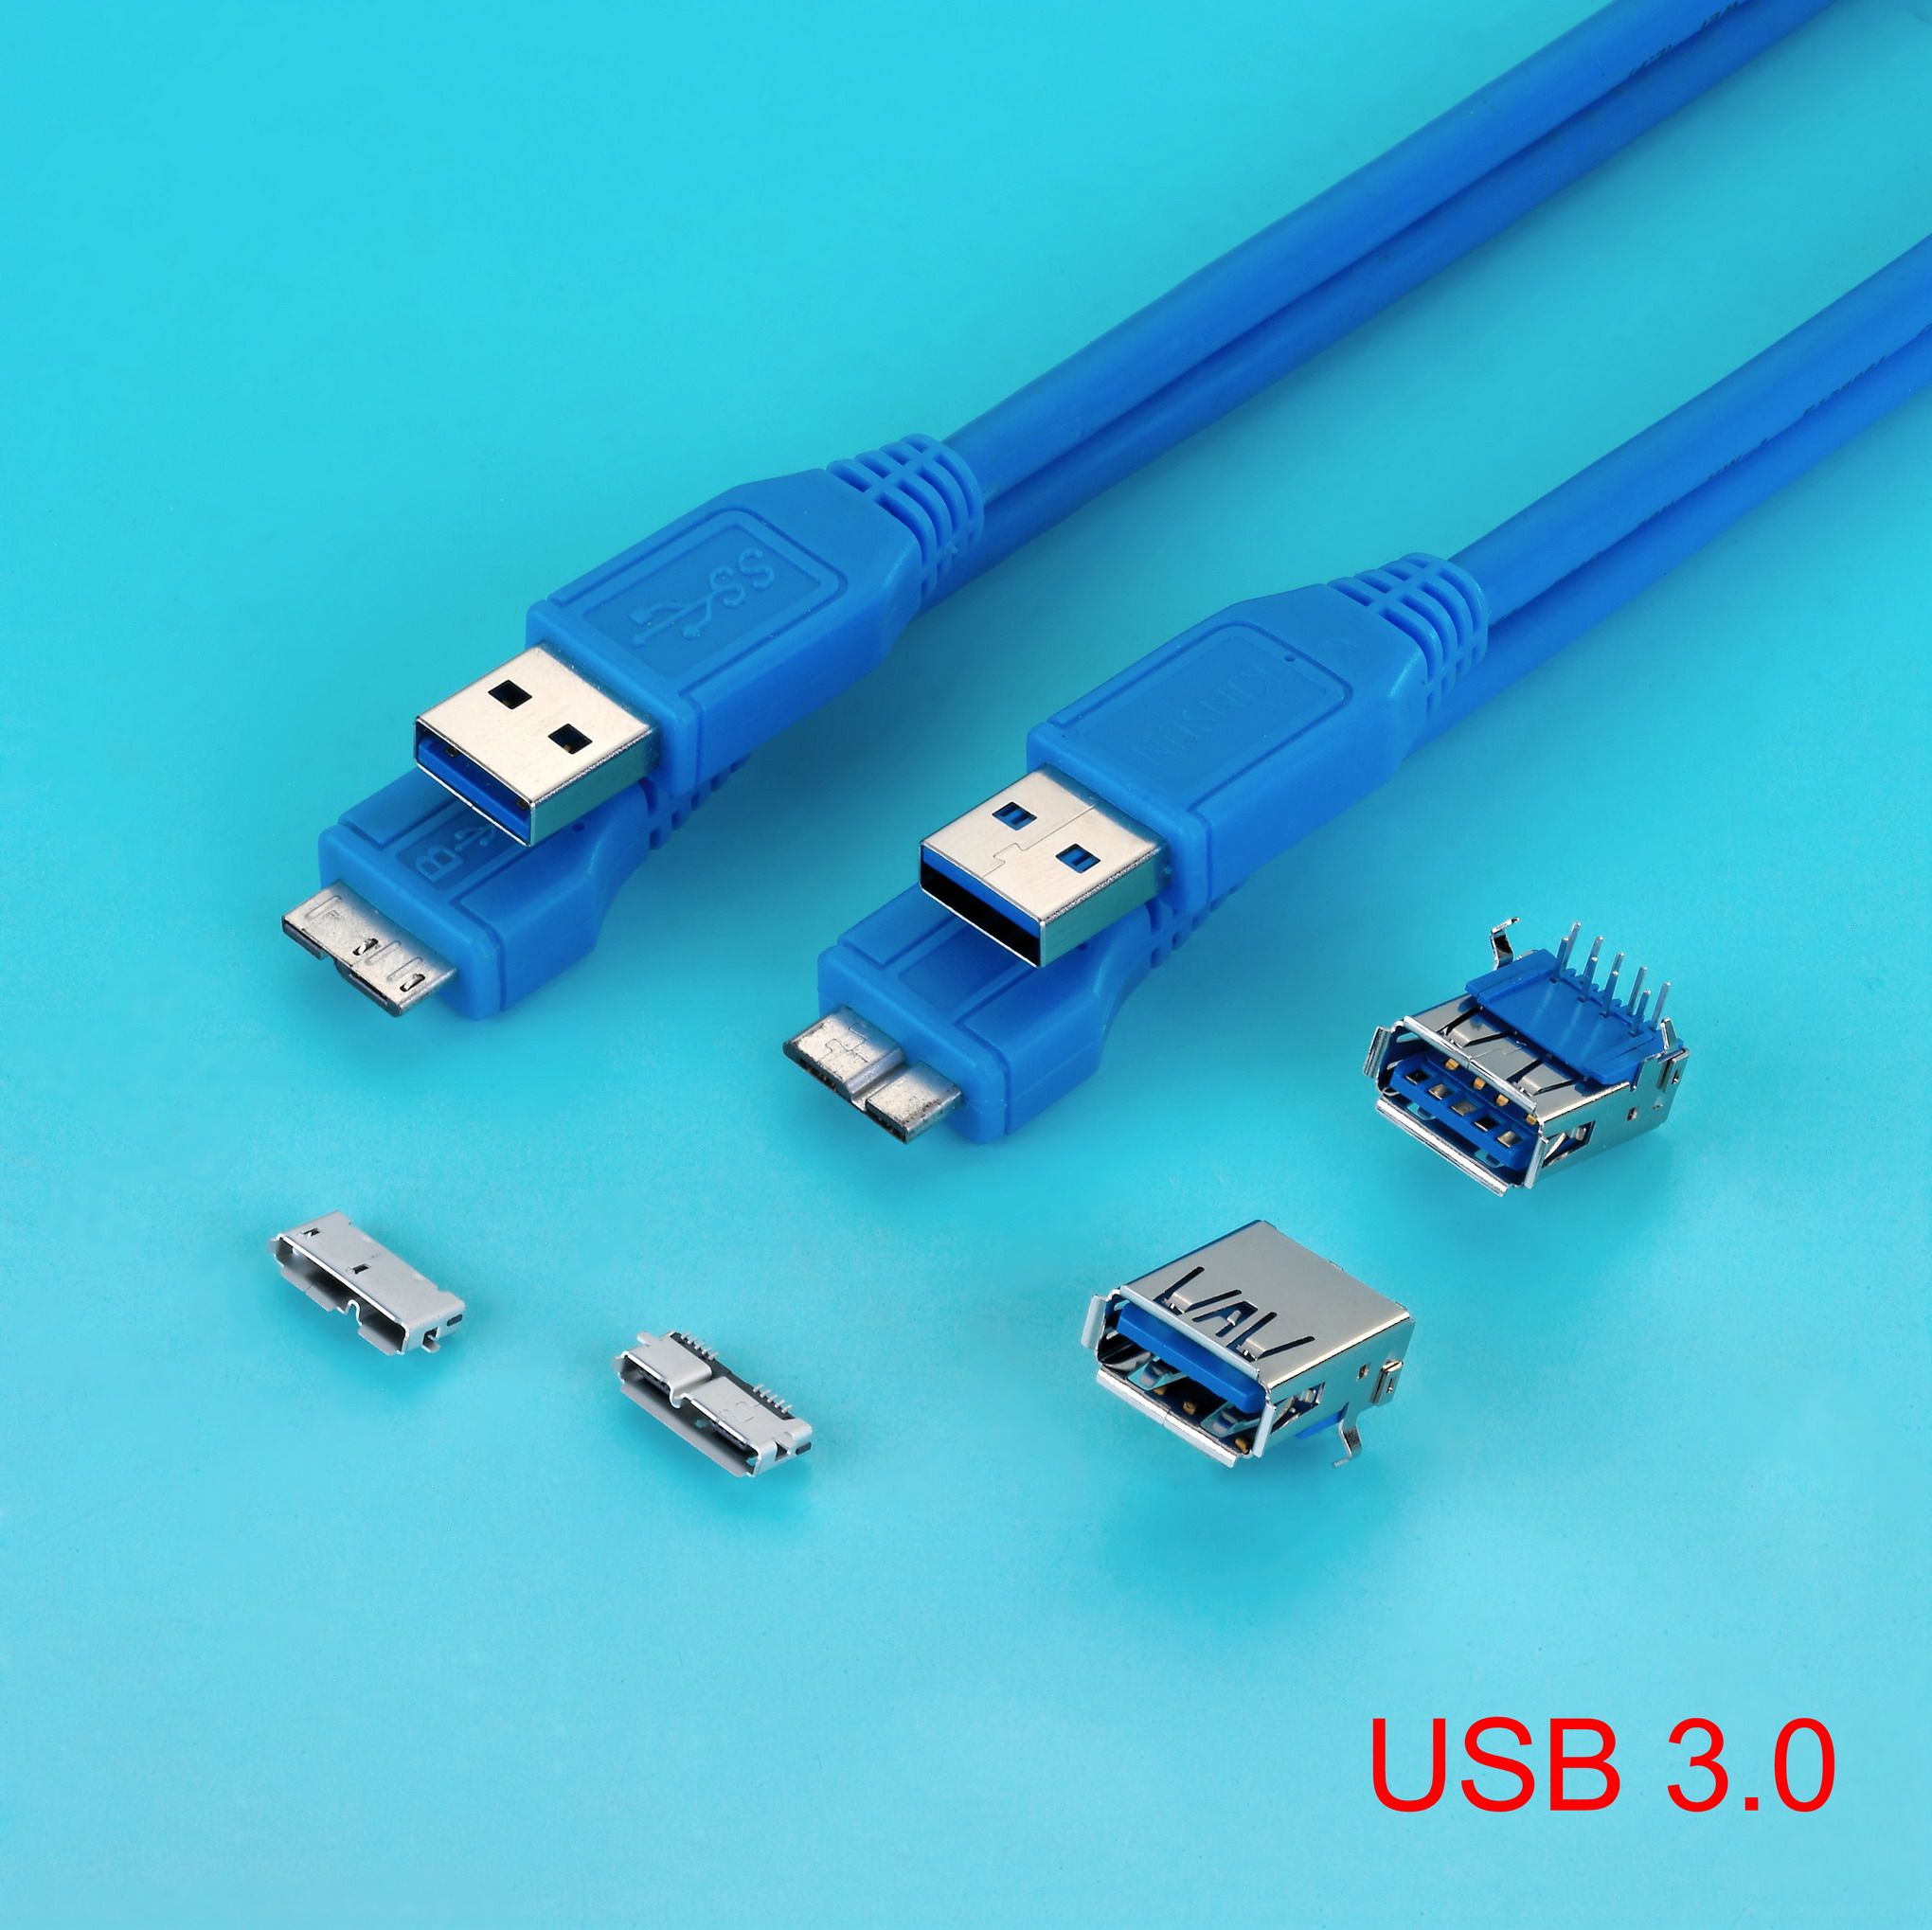 Usb 3.3. Разъем юсб 3.0. Разъем USB 3.0 Micro-b. USB 3.0 gen1 разъем. Юсб 3,0 это юсб и.